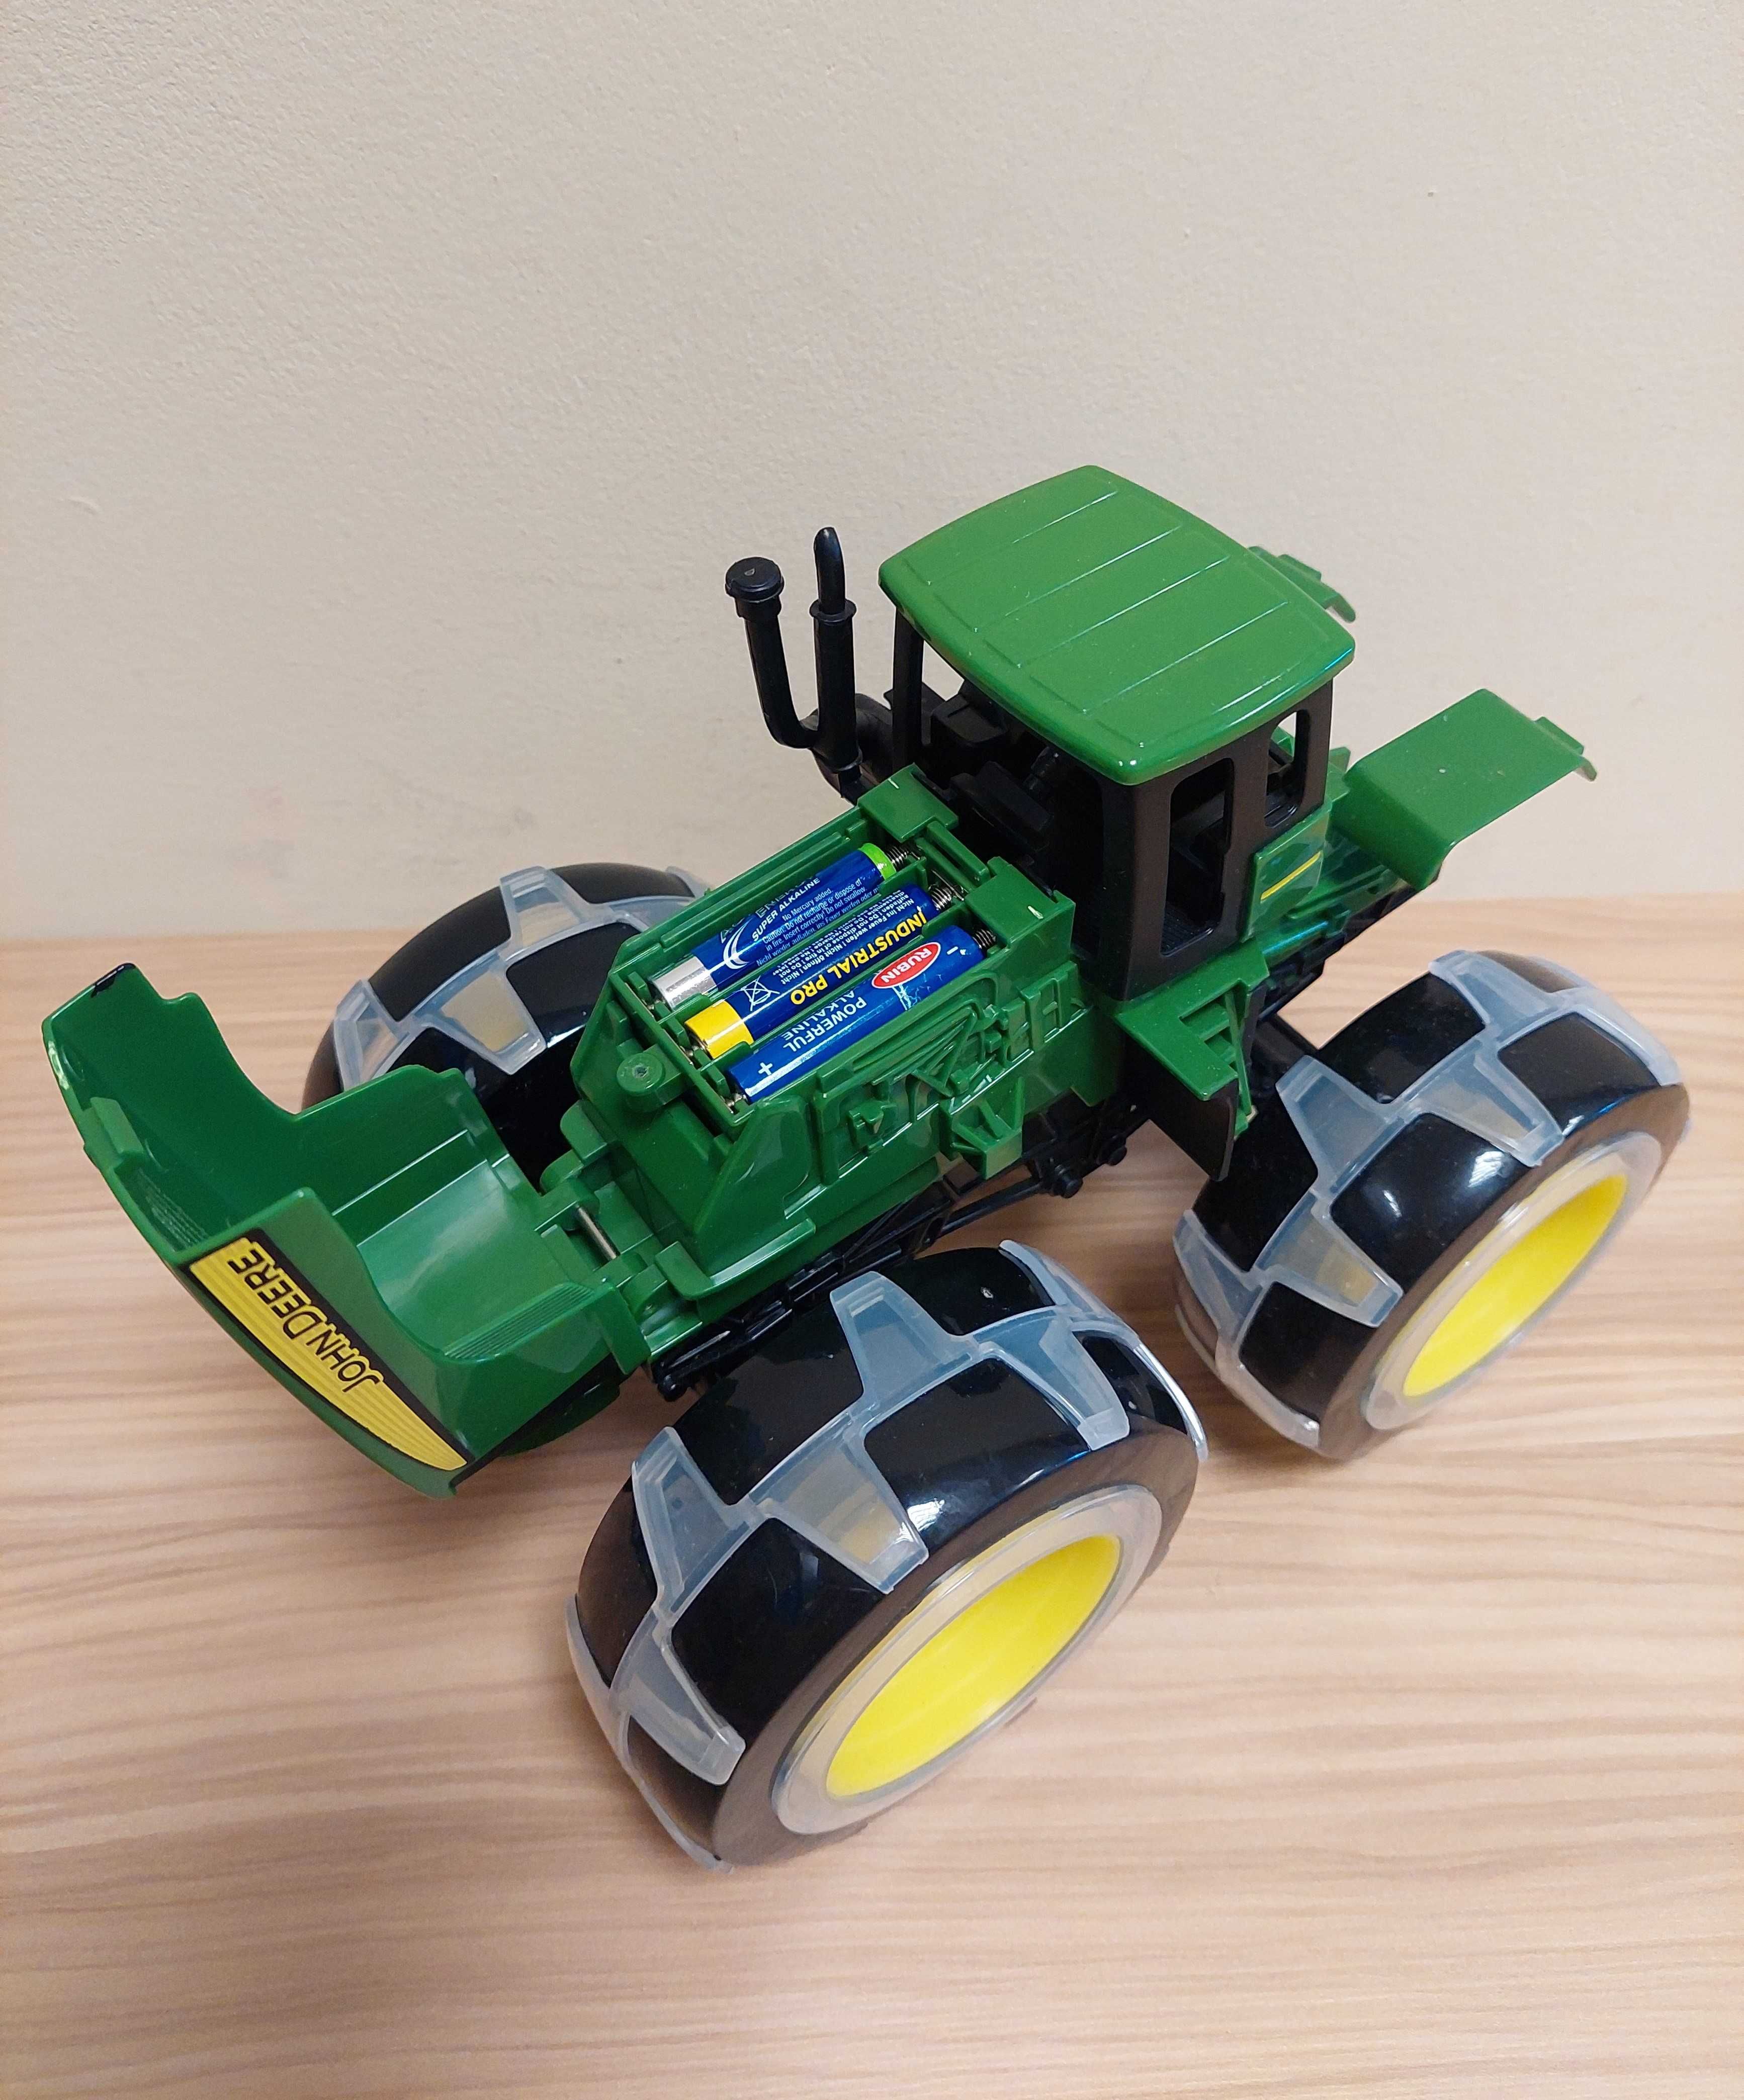 John Deere traktor Monster, świecące opony - nie świecą